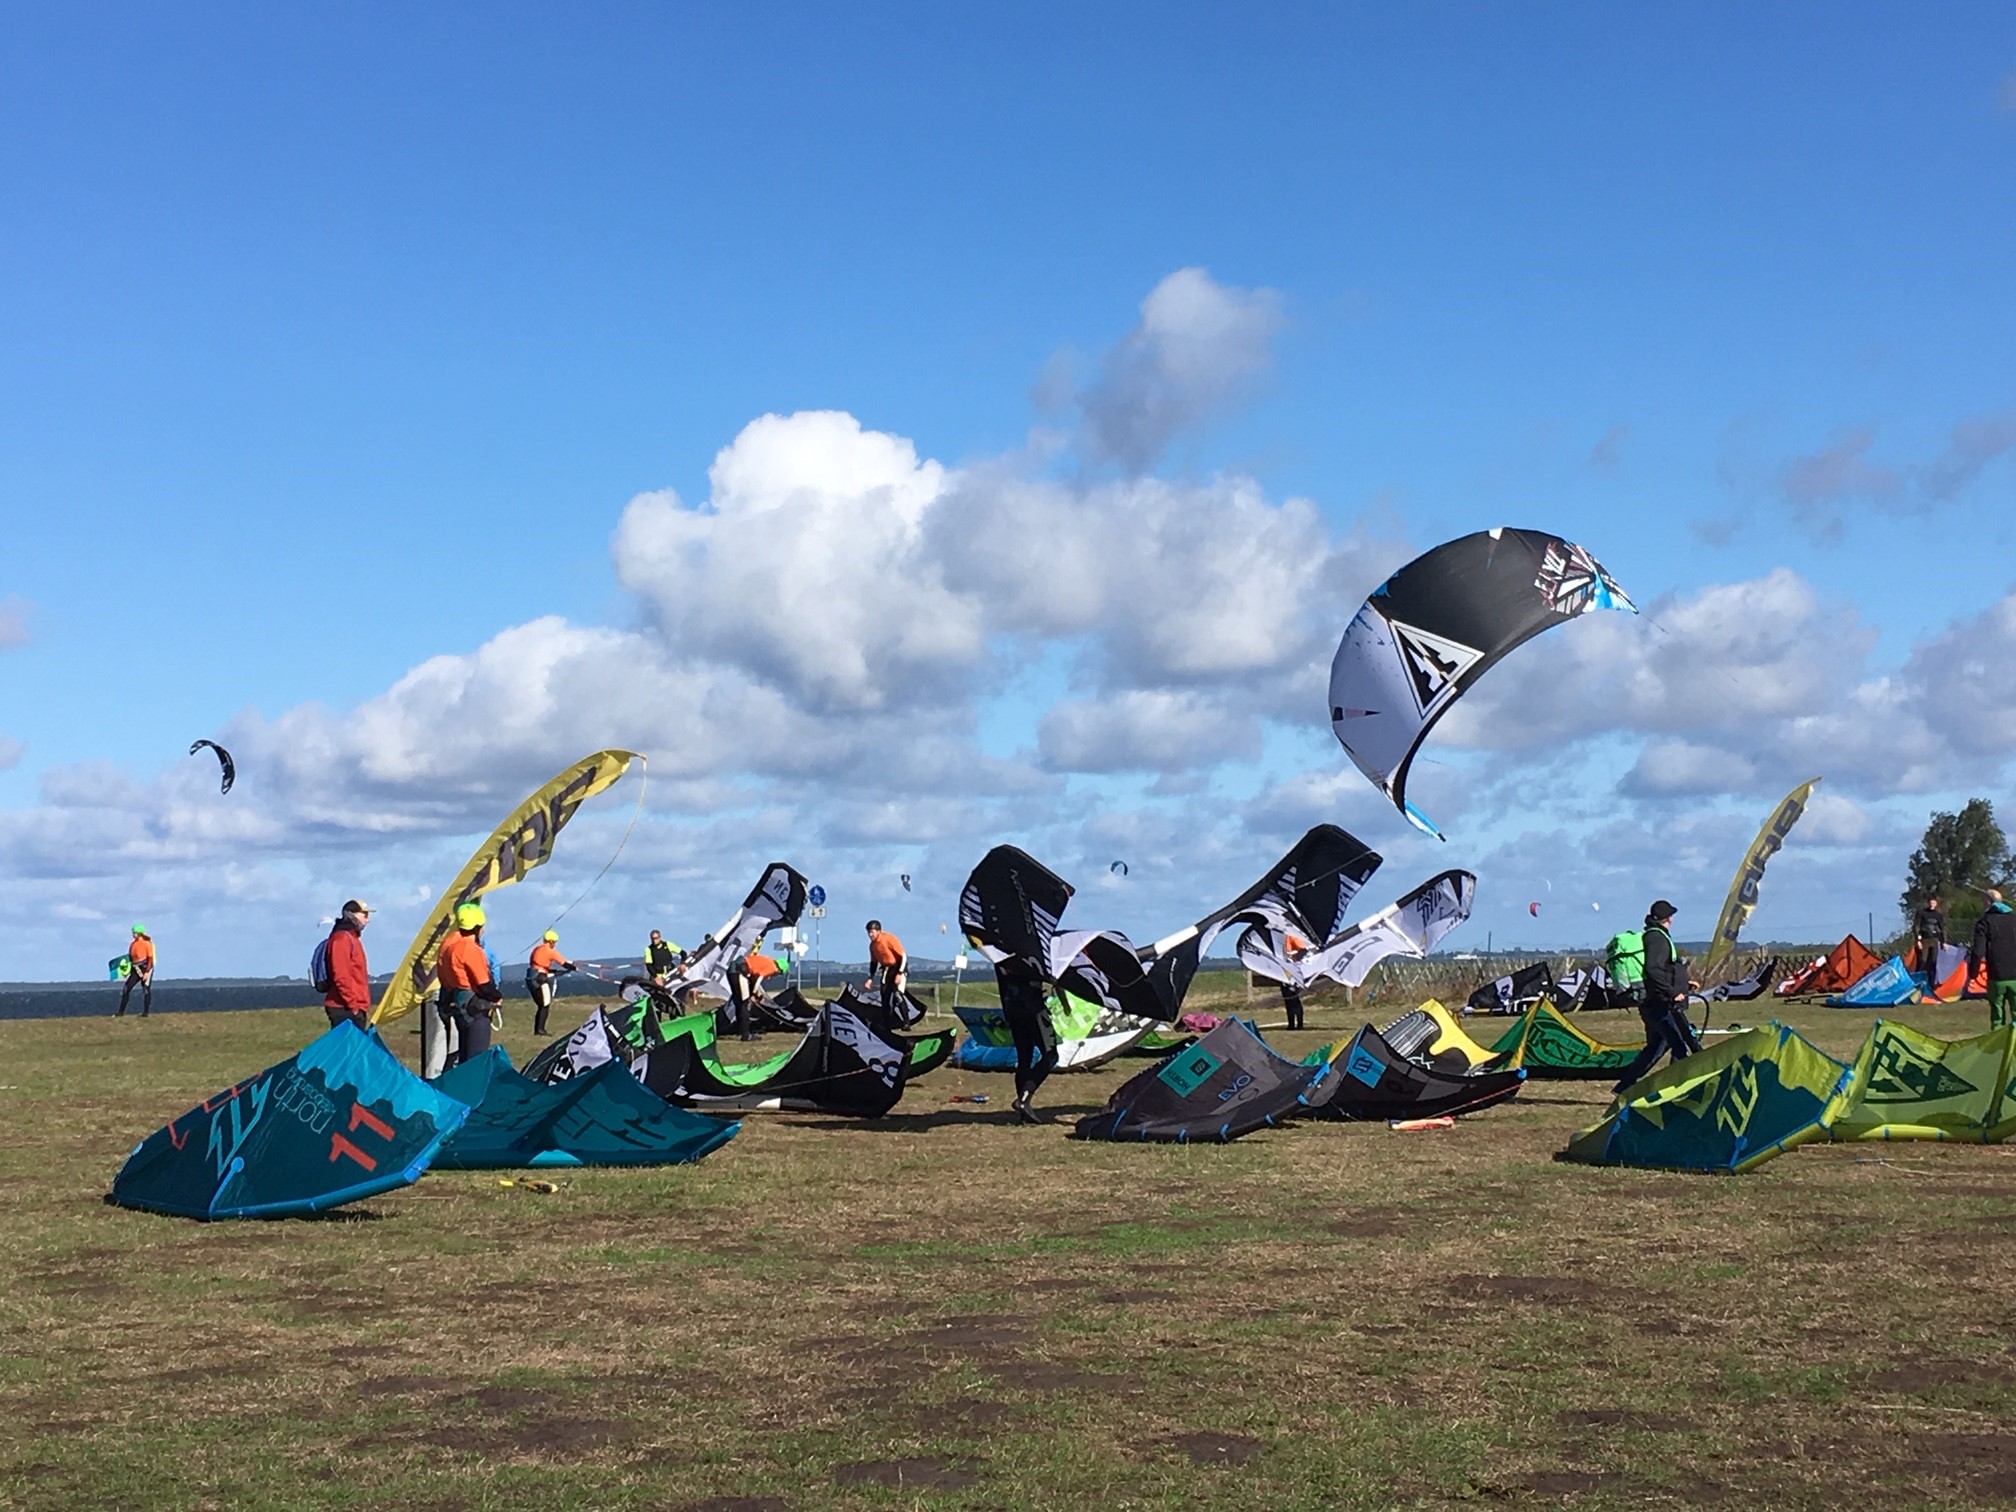 Kites beim Starten auf dem Land